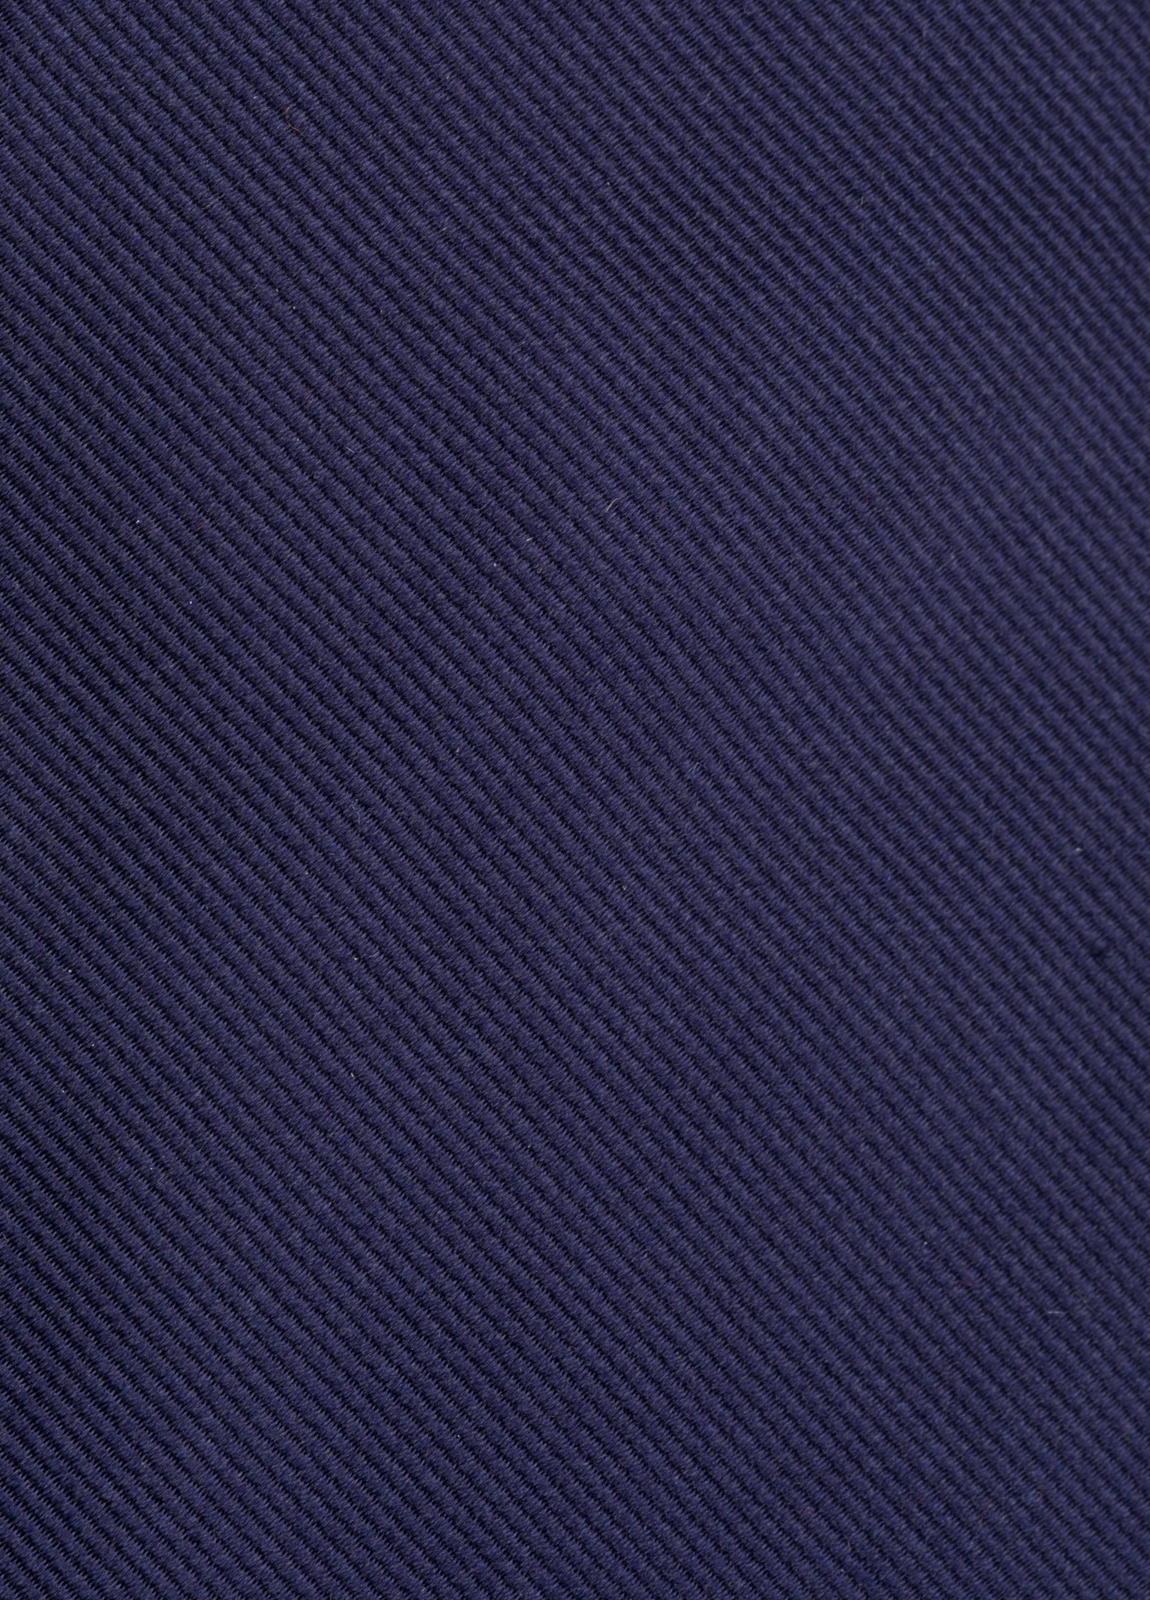 Corbata FUREST COLECCIÓN color marino twill - Ítem2